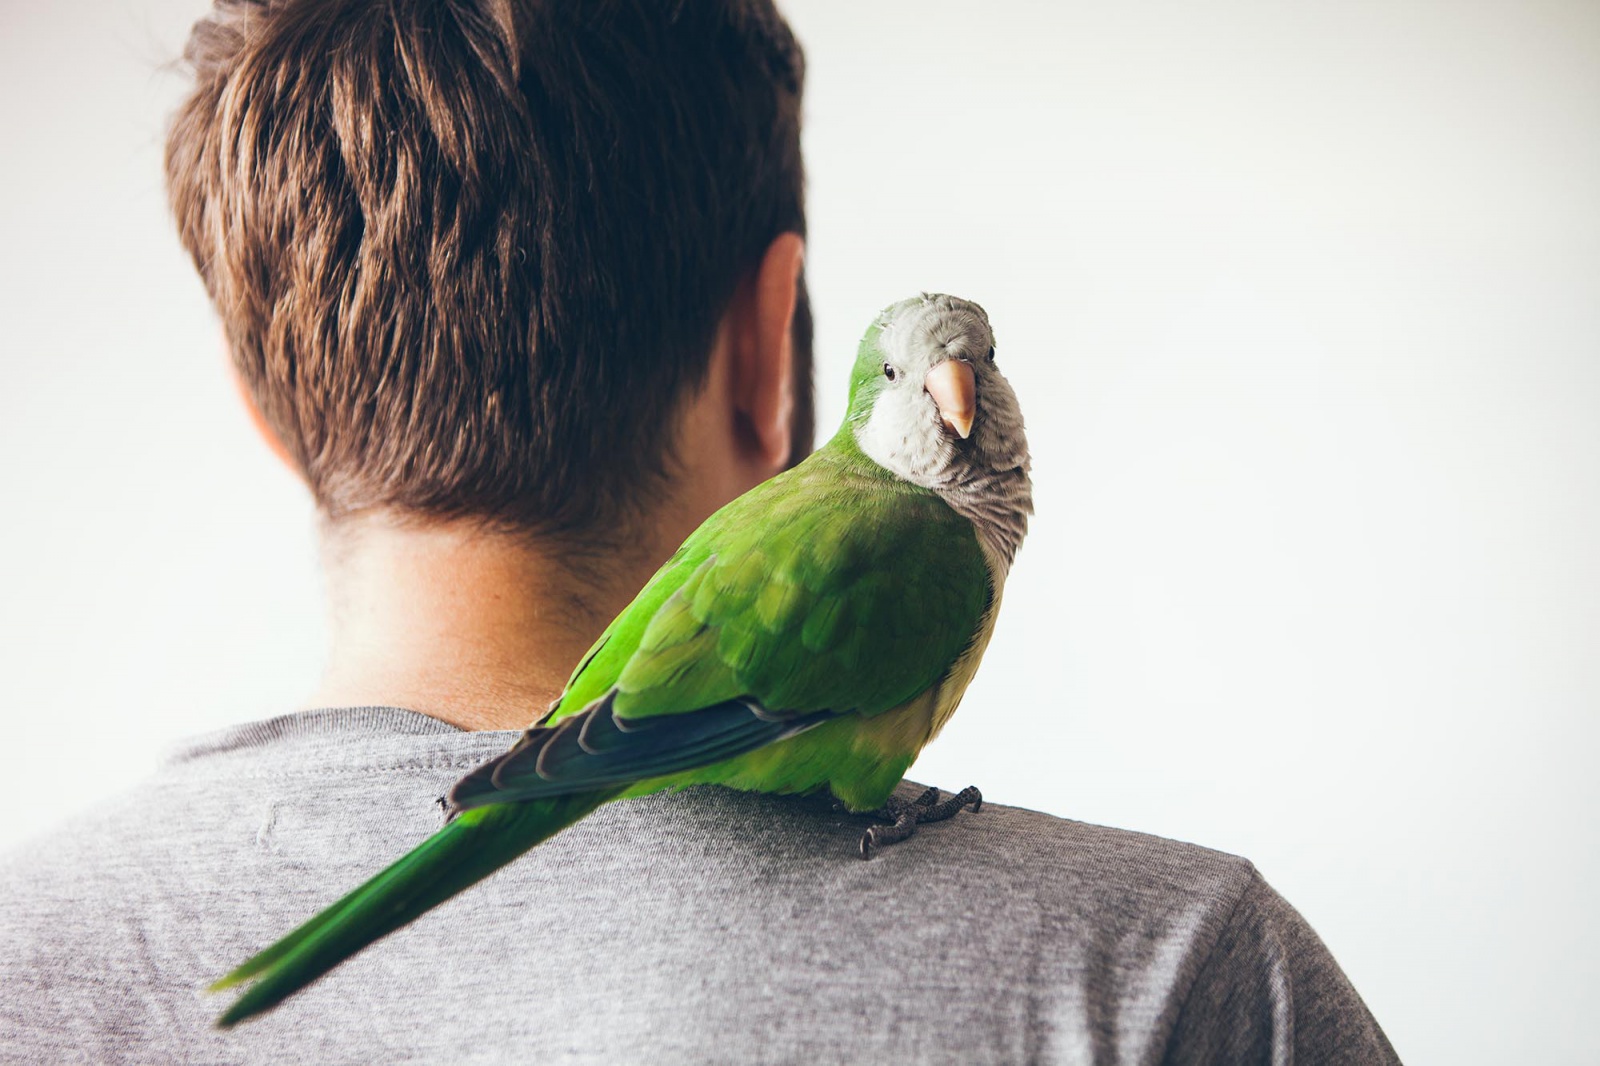 Náladový, upovídaný, věrný. Mít doma papouška není tak snadné, jak se zdá -  Chomutovský deník